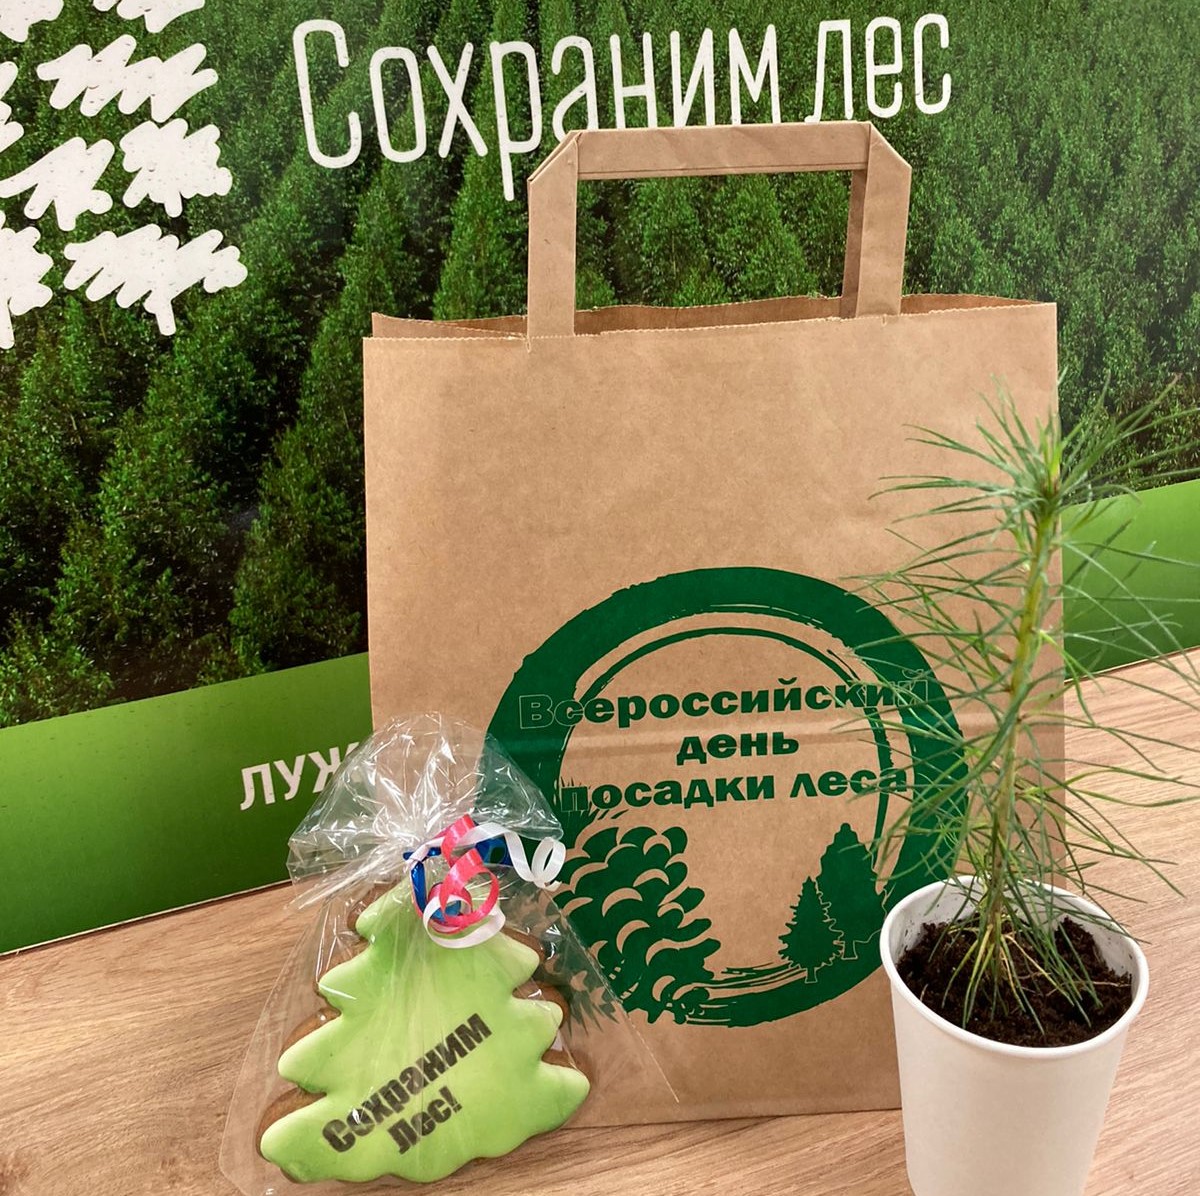 Всероссийская акция “Сохраним лес”